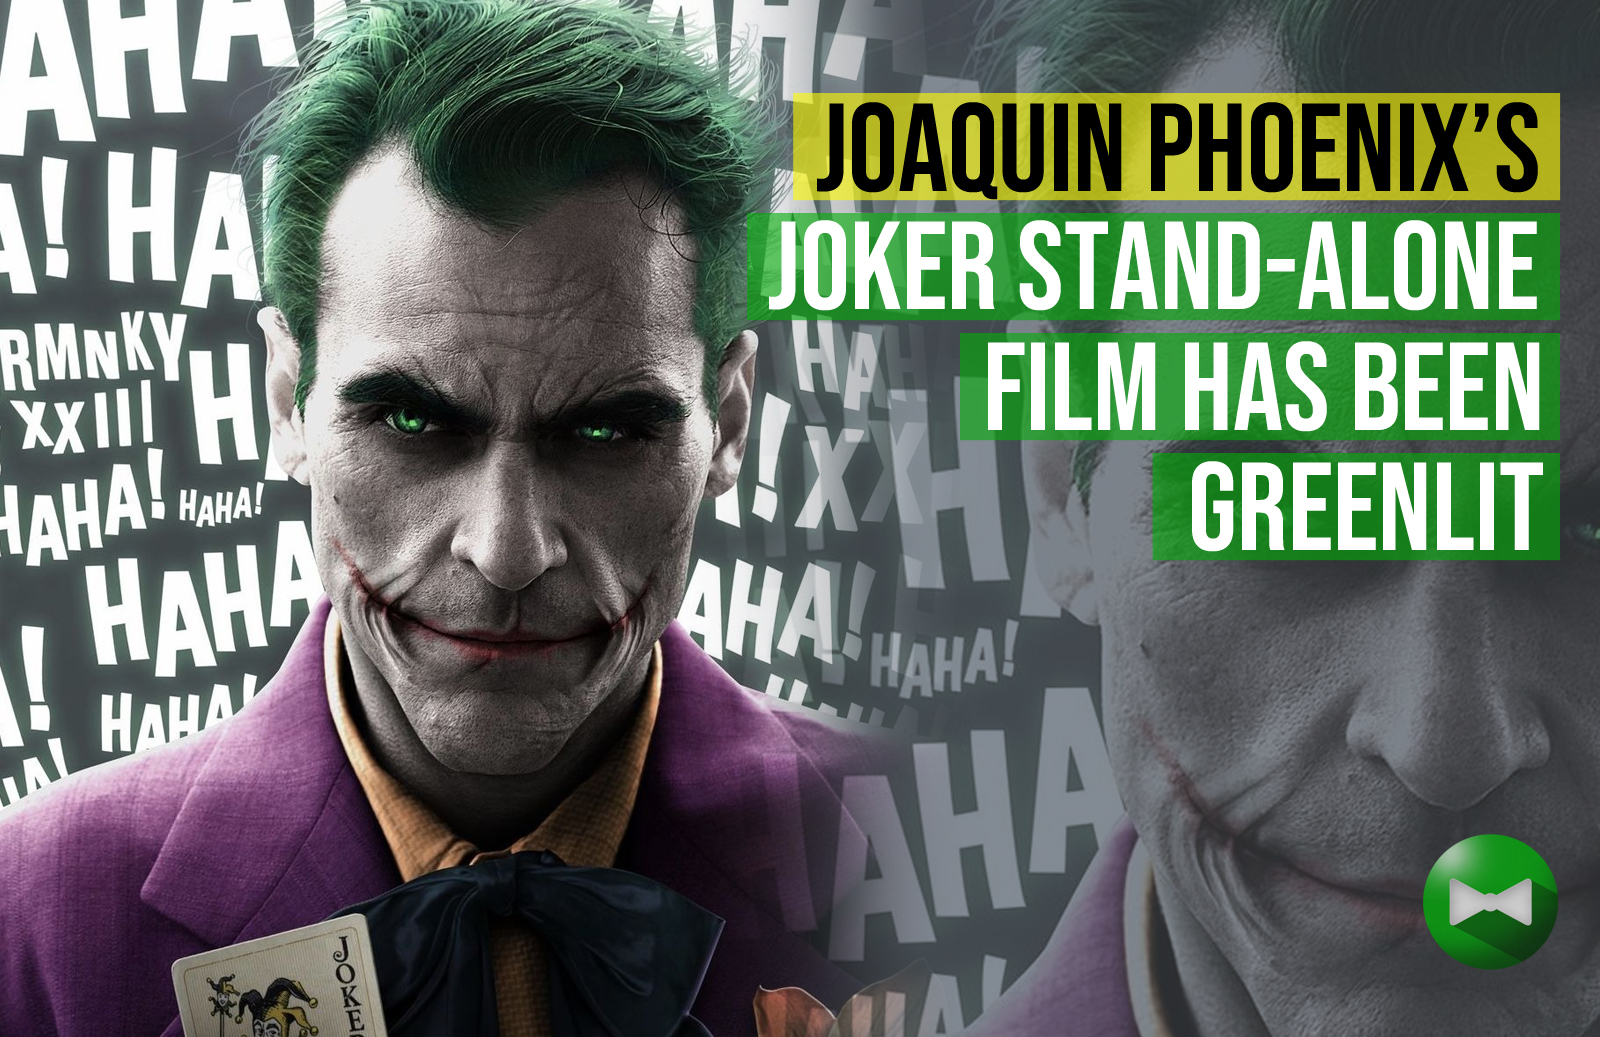 Joaquin Phoenix's Joker stand-alone film has been greenlit - The Geekery